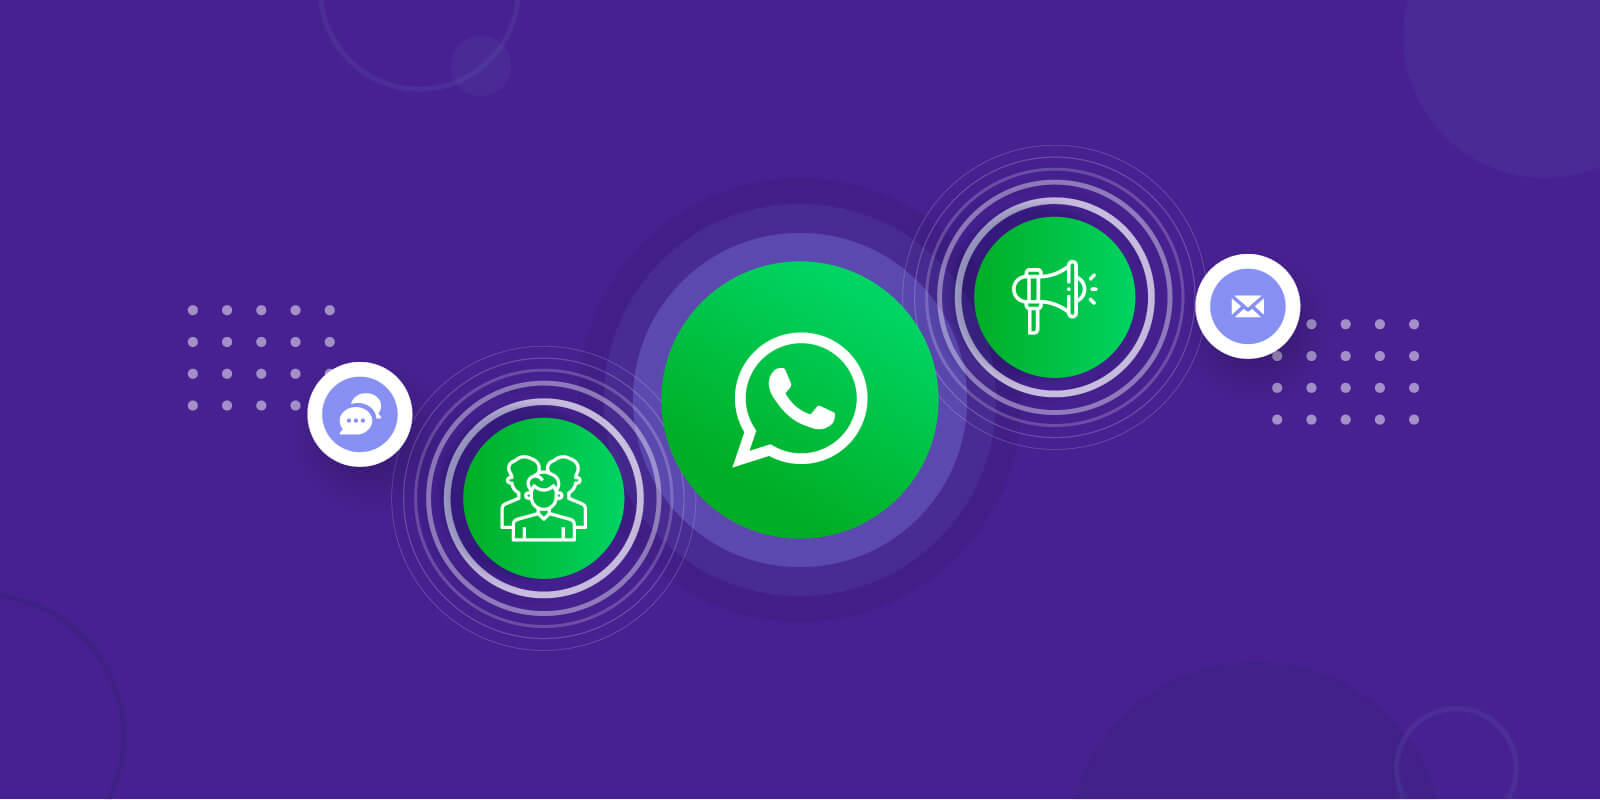 WhatsApp, Gelecekte Sohbet Listesi İçin Bir Güncelleme Yayınlayabilir